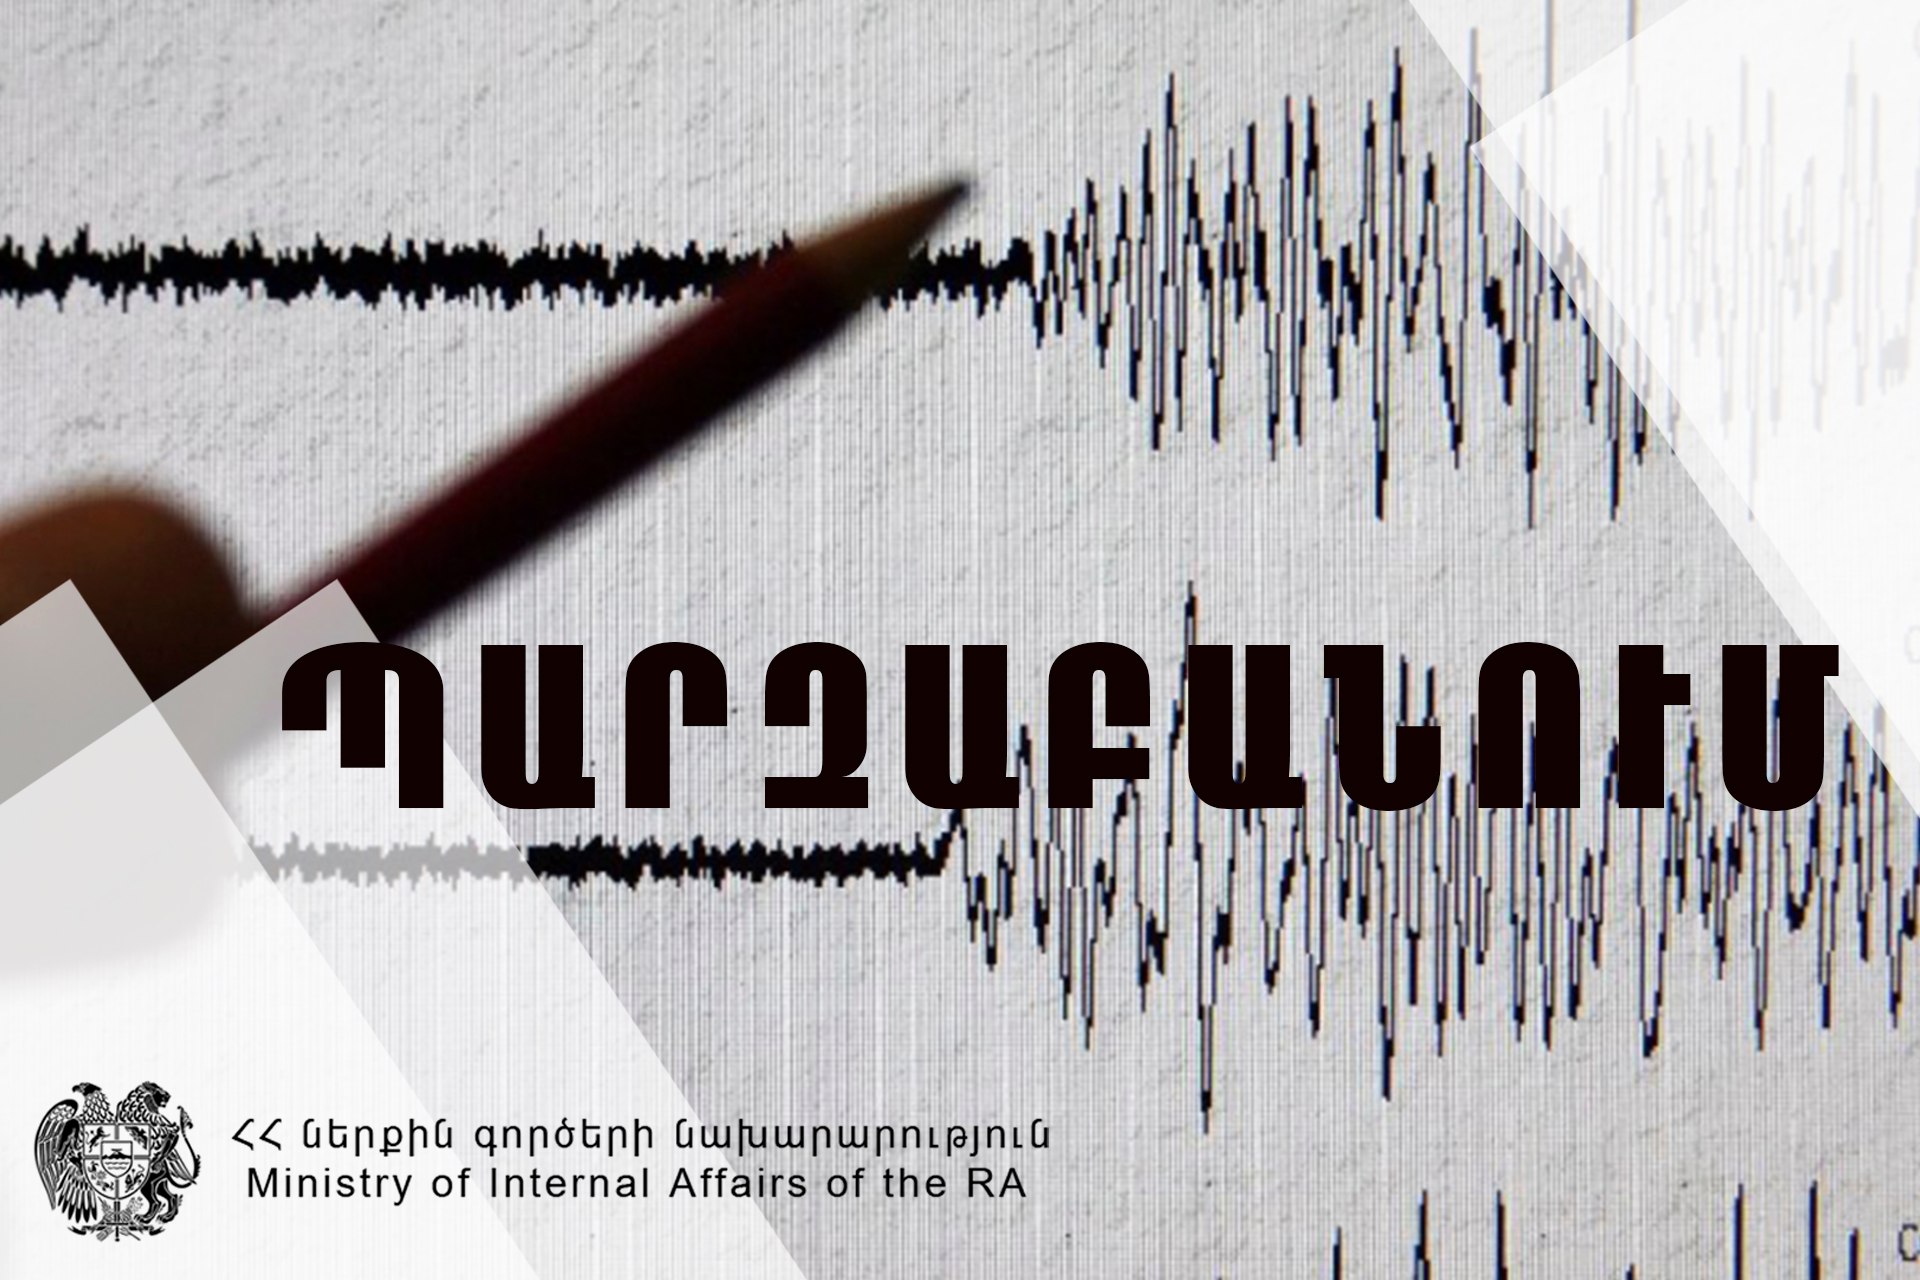 Հայաստանում տեղի ունեցած երկրաշարժերի վերաբերյալ անհրաժեշտ է հետևել պաշտոնական հաղորդագրություններին. պարզաբանում